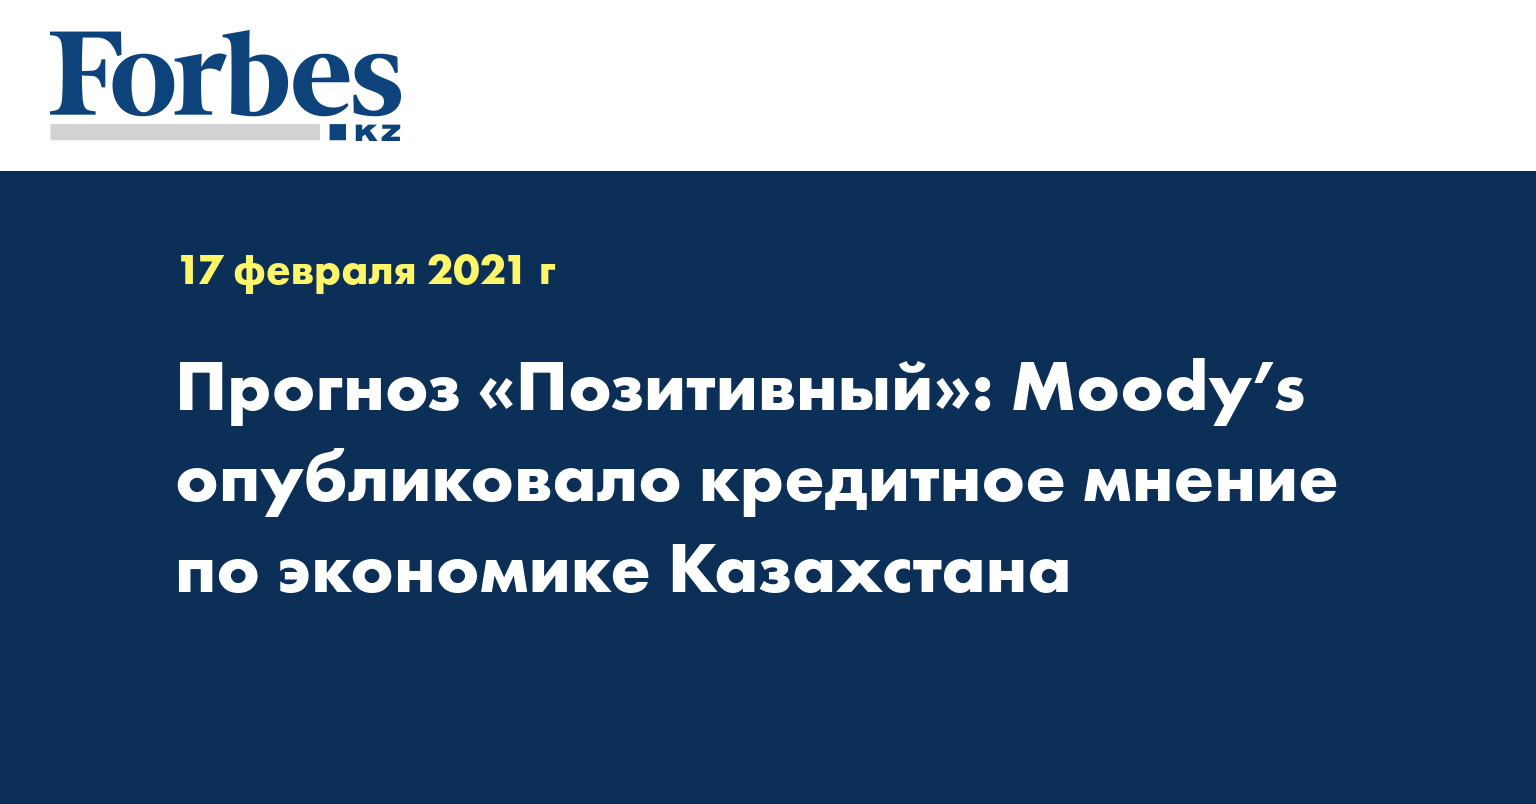 Прогноз «Позитивный»: Moody’s опубликовало кредитное мнение по экономике Казахстана